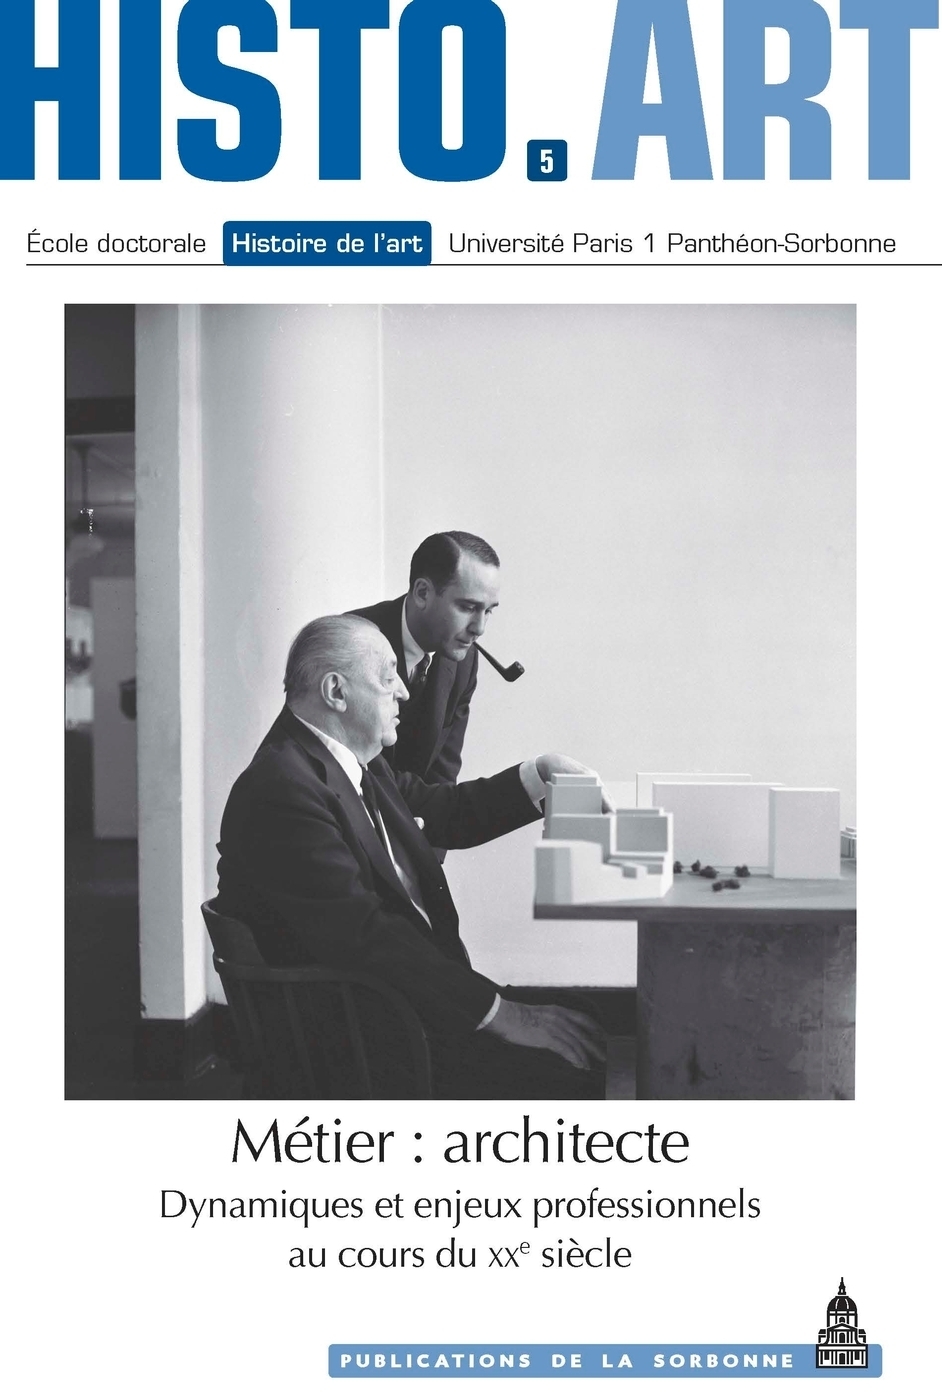 « Le Corbusier: Participation! »